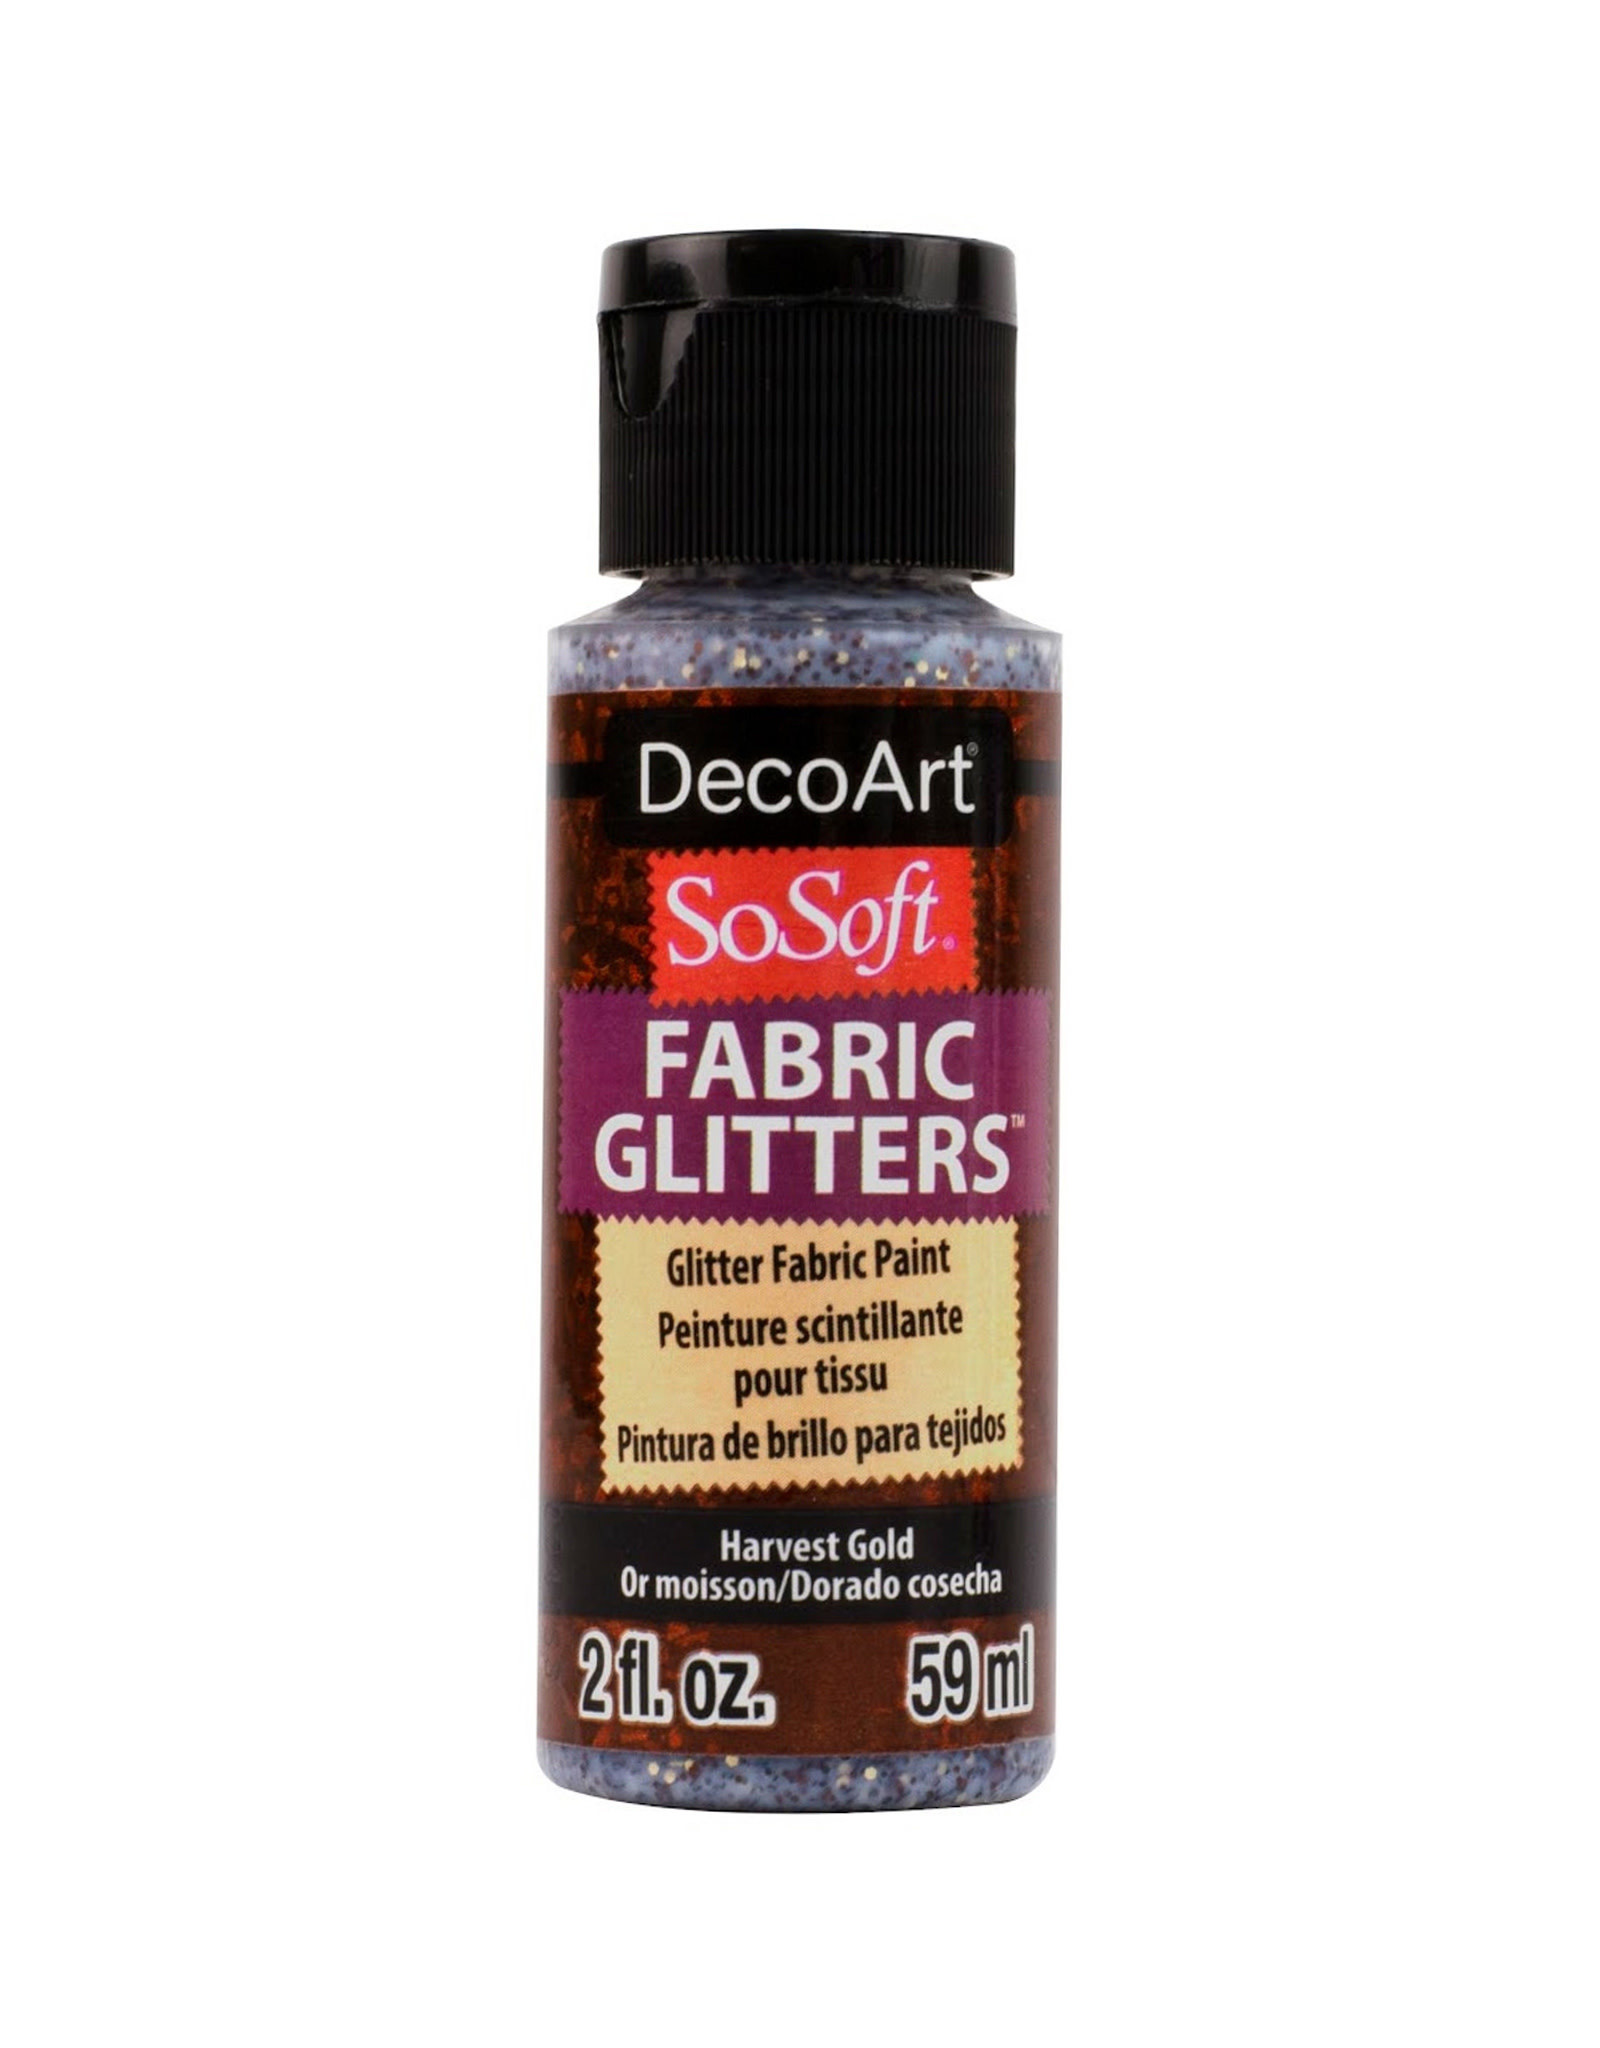 DecoArt DecoArt SoSoft Fabric Glitters, Harvest Gold 2oz